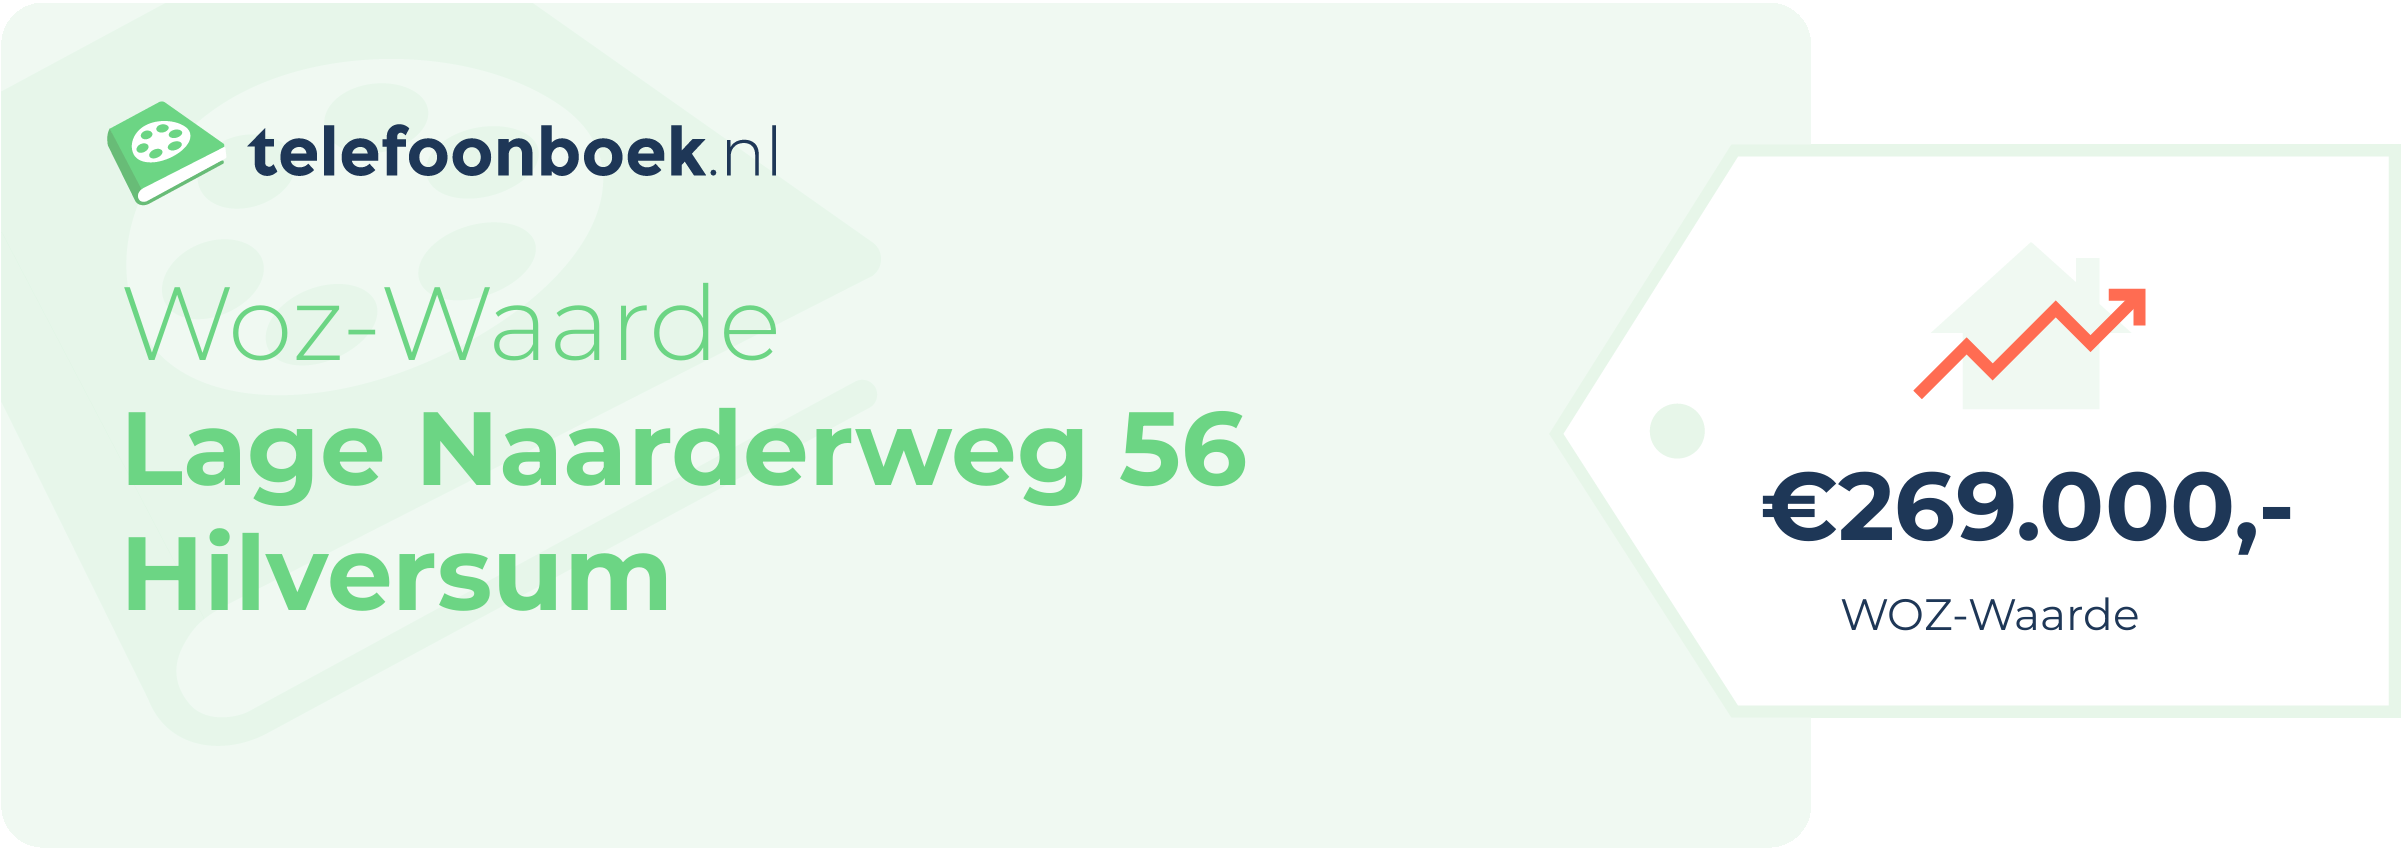 WOZ-waarde Lage Naarderweg 56 Hilversum